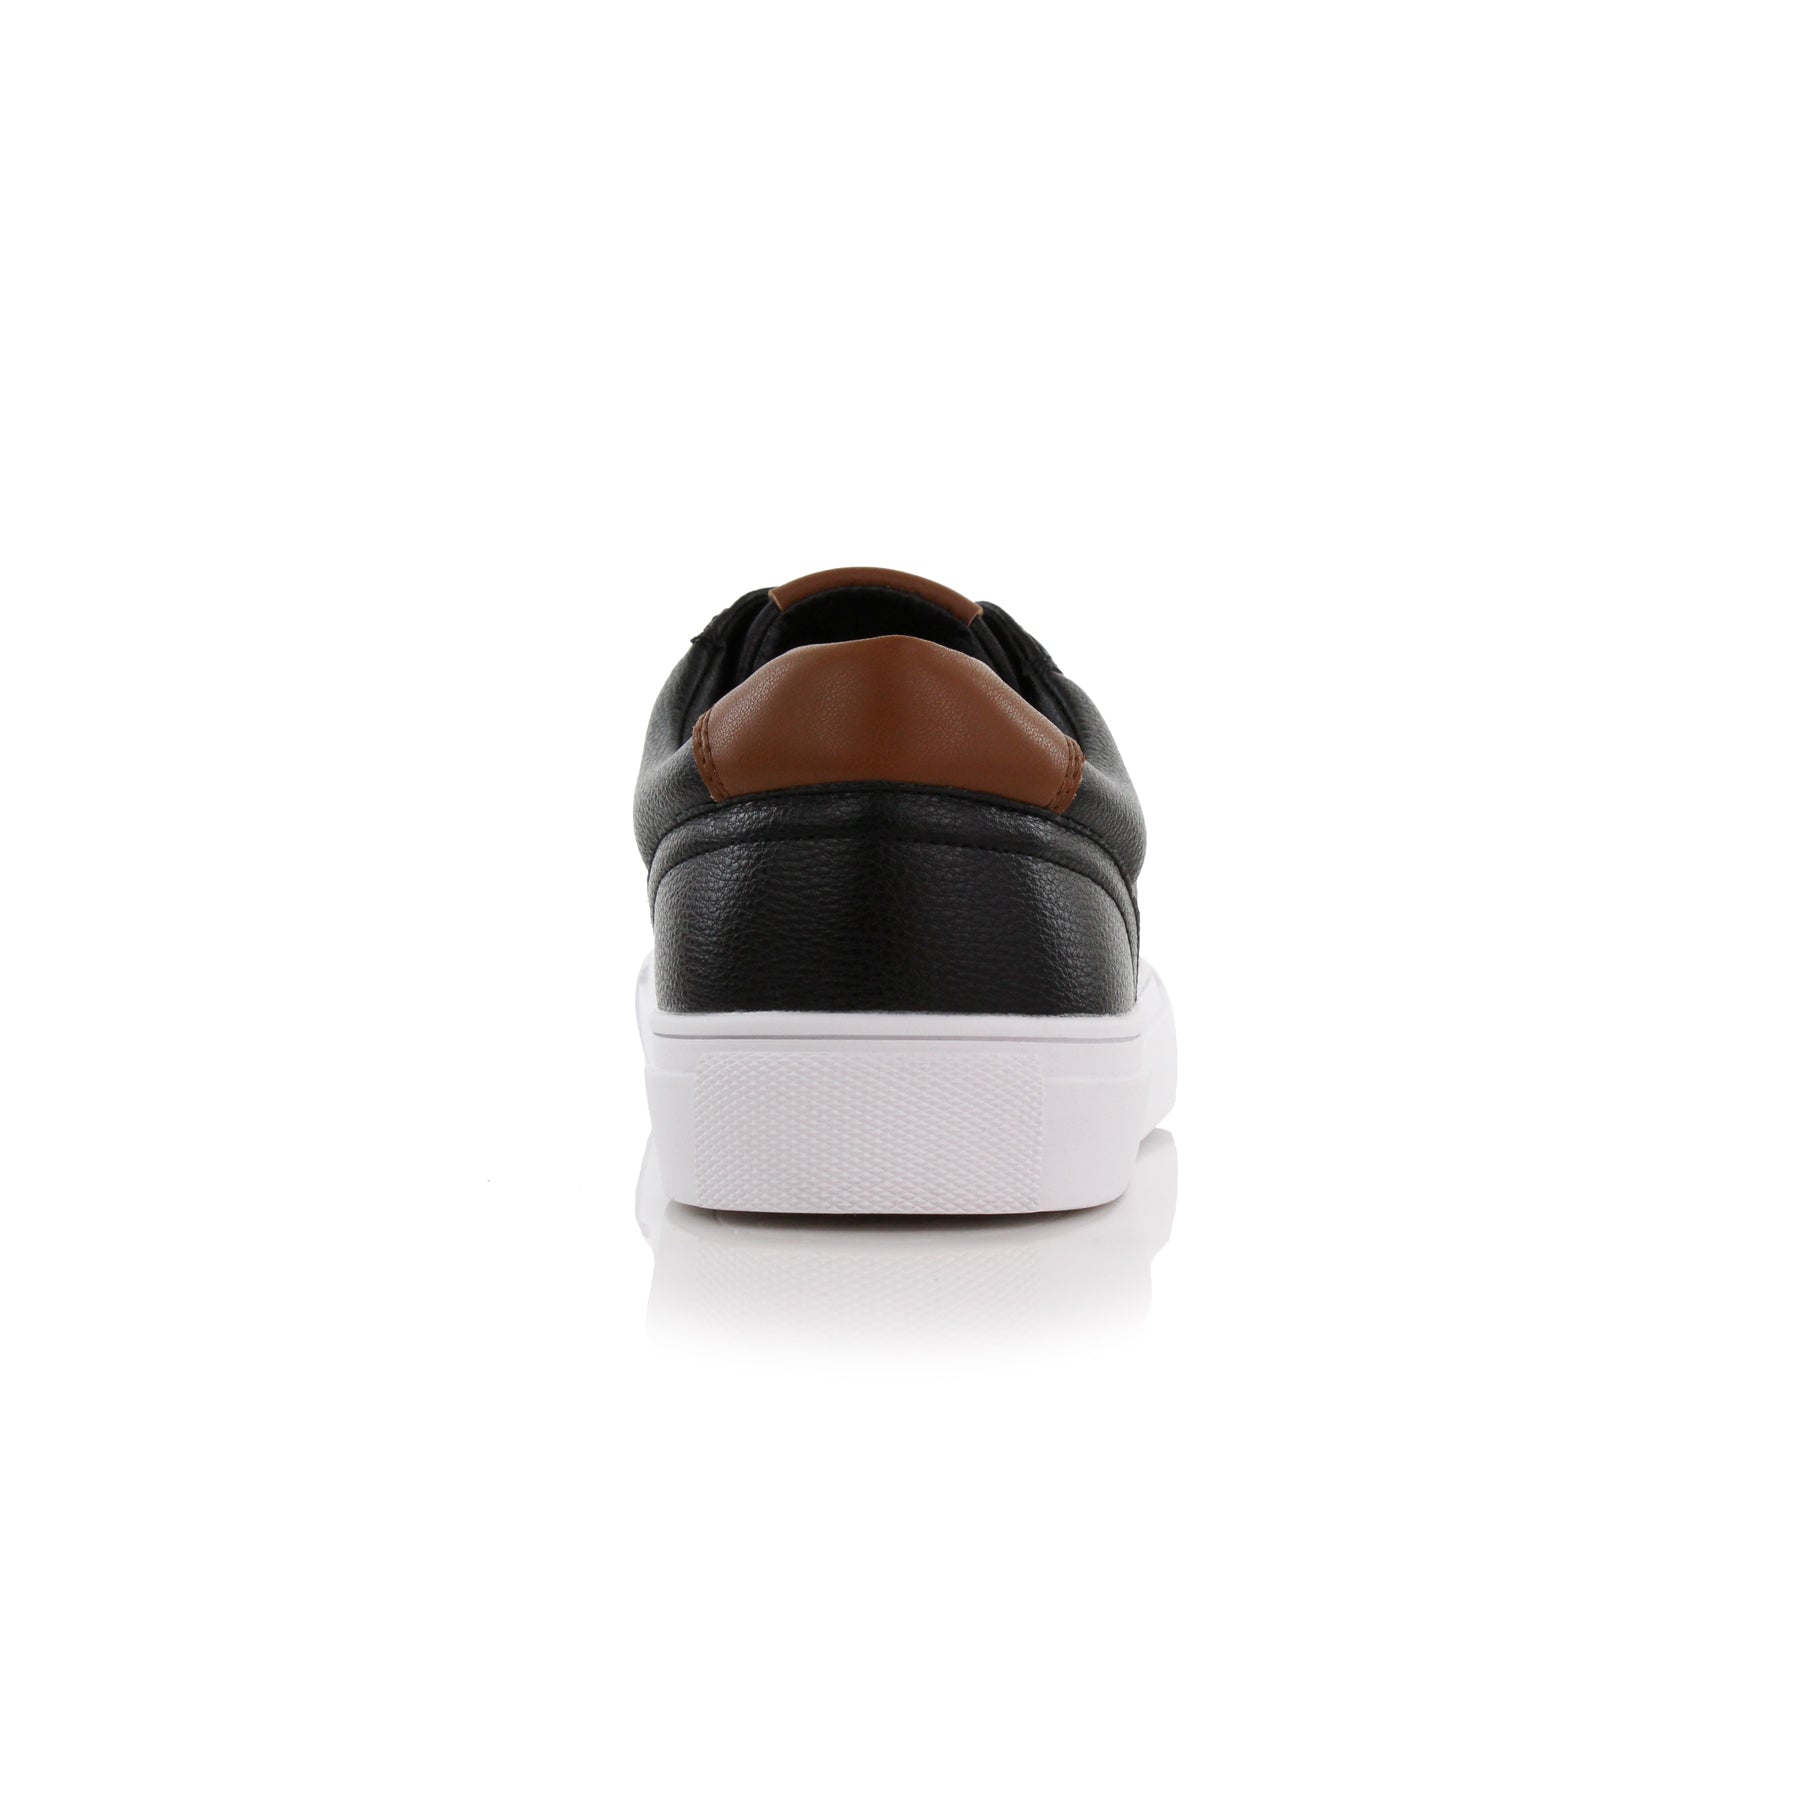 Low-Top Sneakers | Daniel by Ferro Aldo | Conal Footwear | Back Angle View